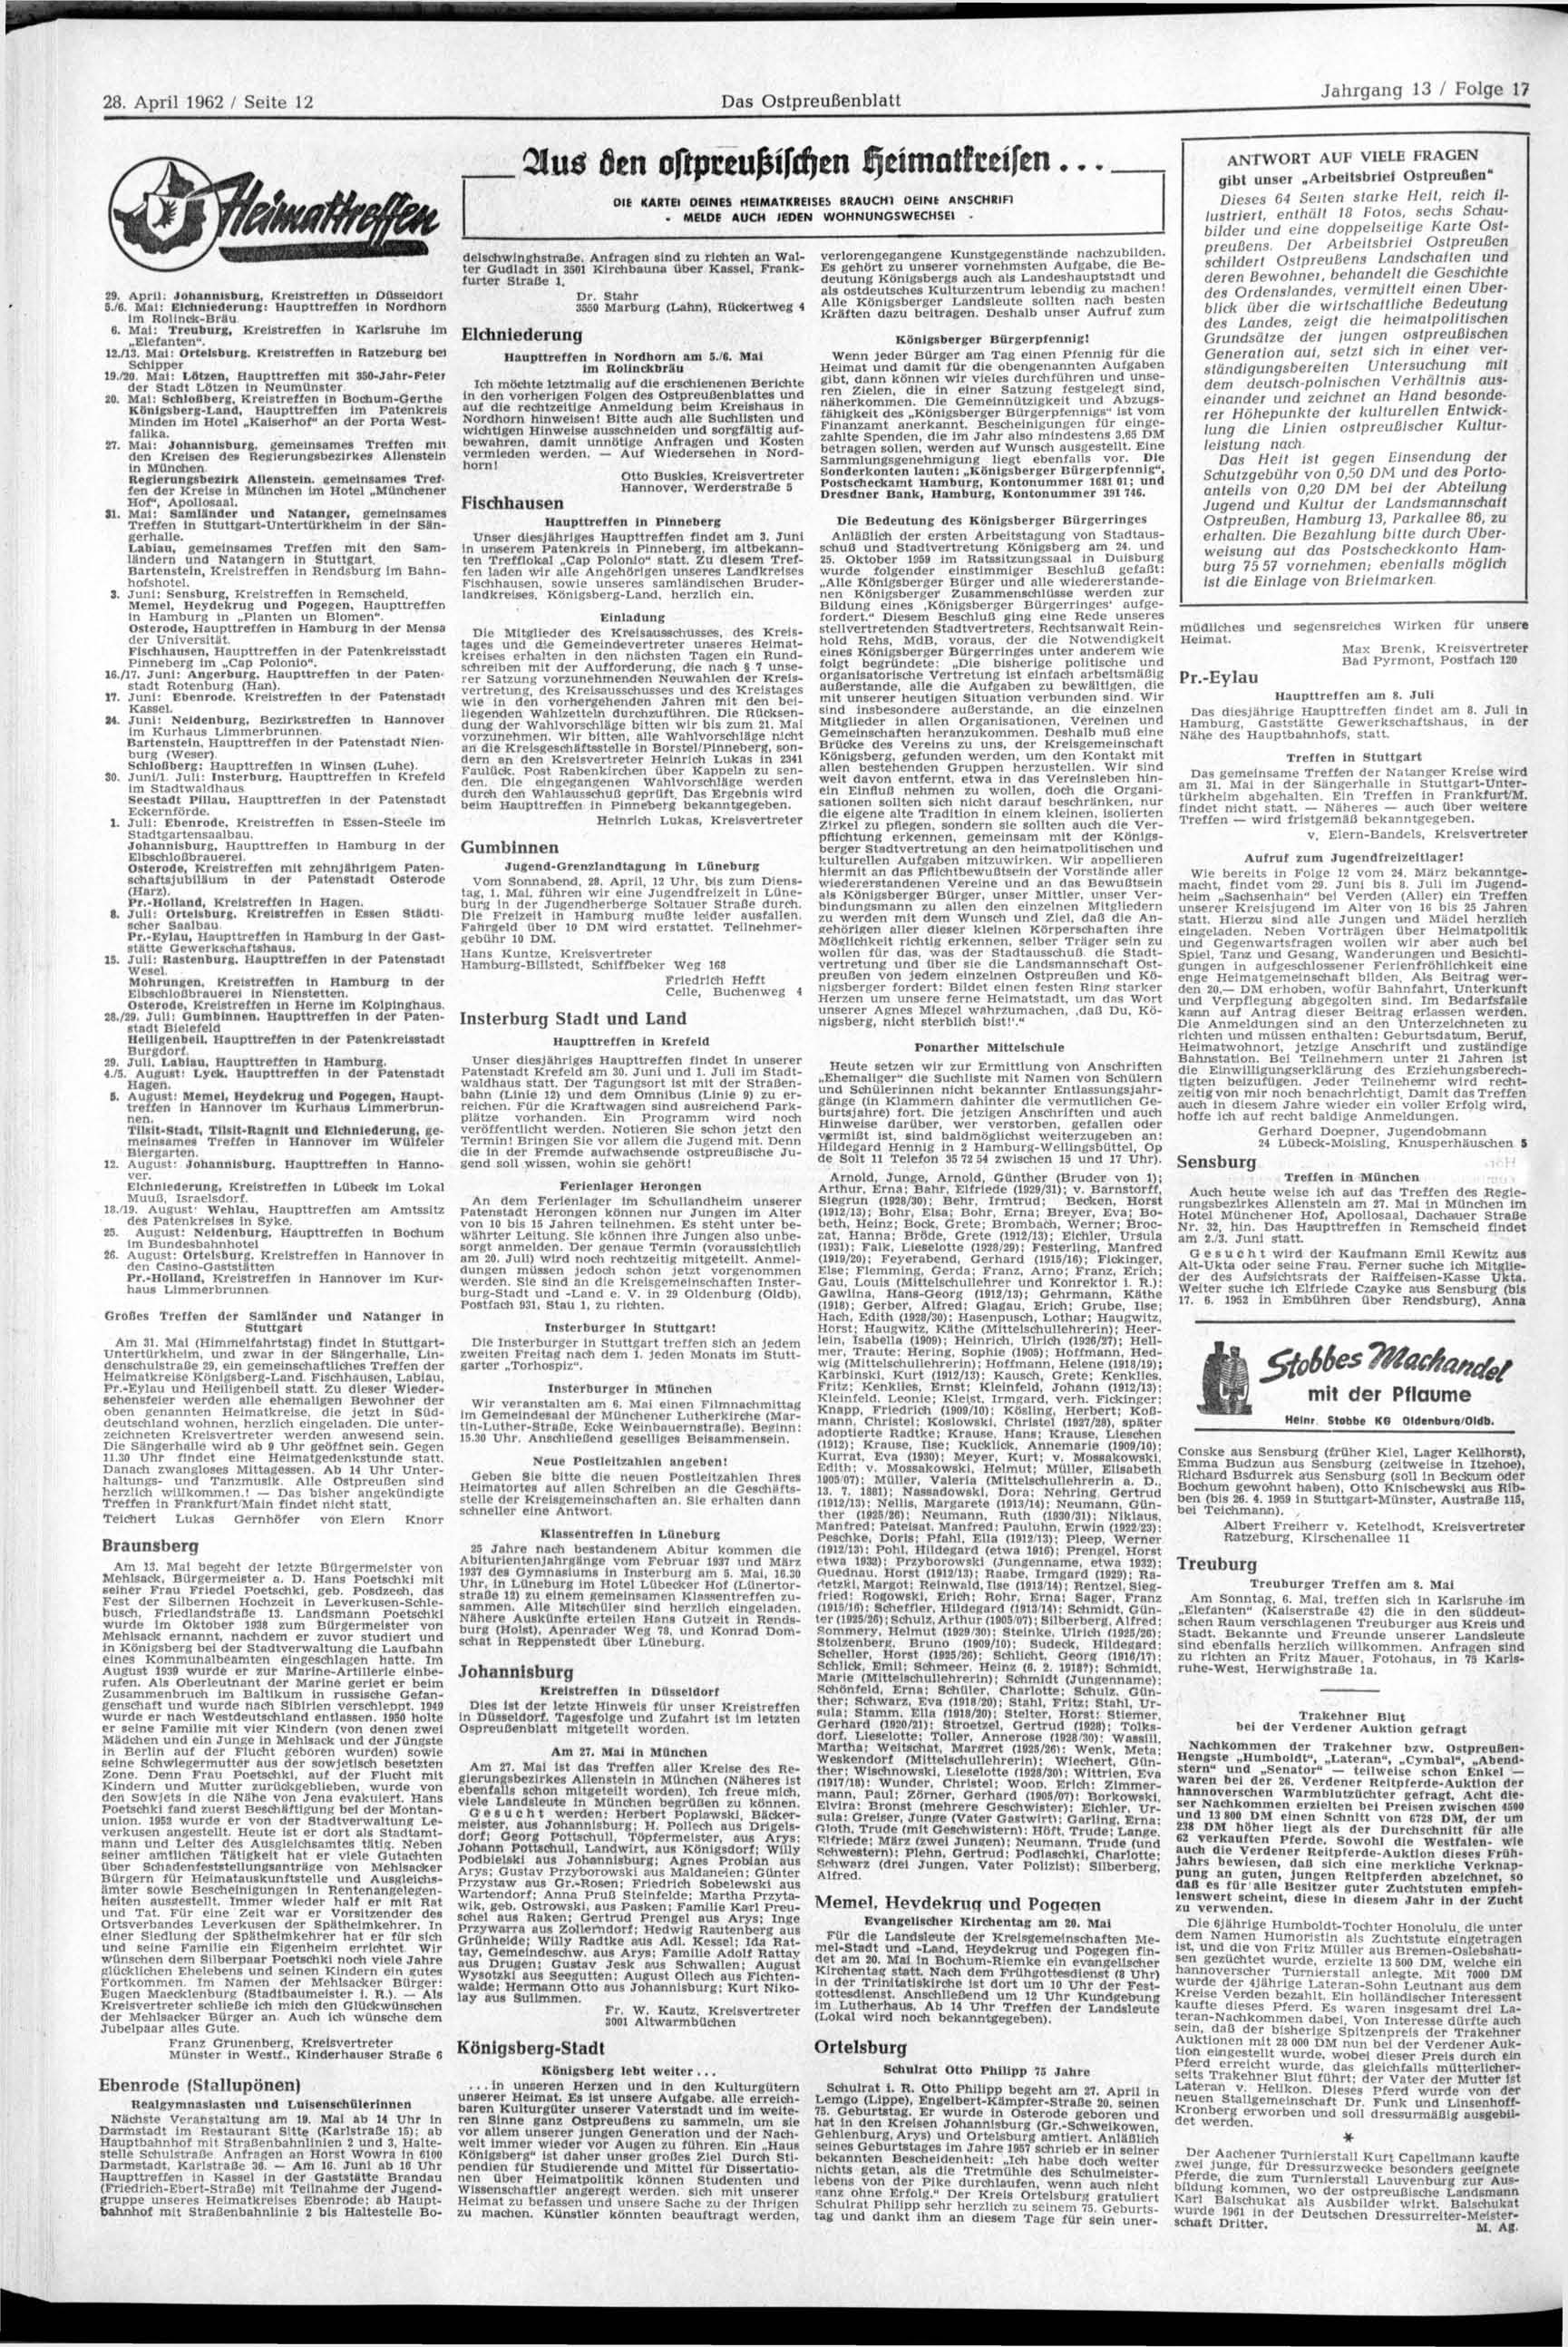 28. April 1962 / Seite 12 Das Ostpreußenblatt 29. April; Johannisburg, Kreistreffen in Düsseldorl 5./6. Mai: Elchniederung: Haupttreffen In Nordhorn Im Rolinck-Brau 6.